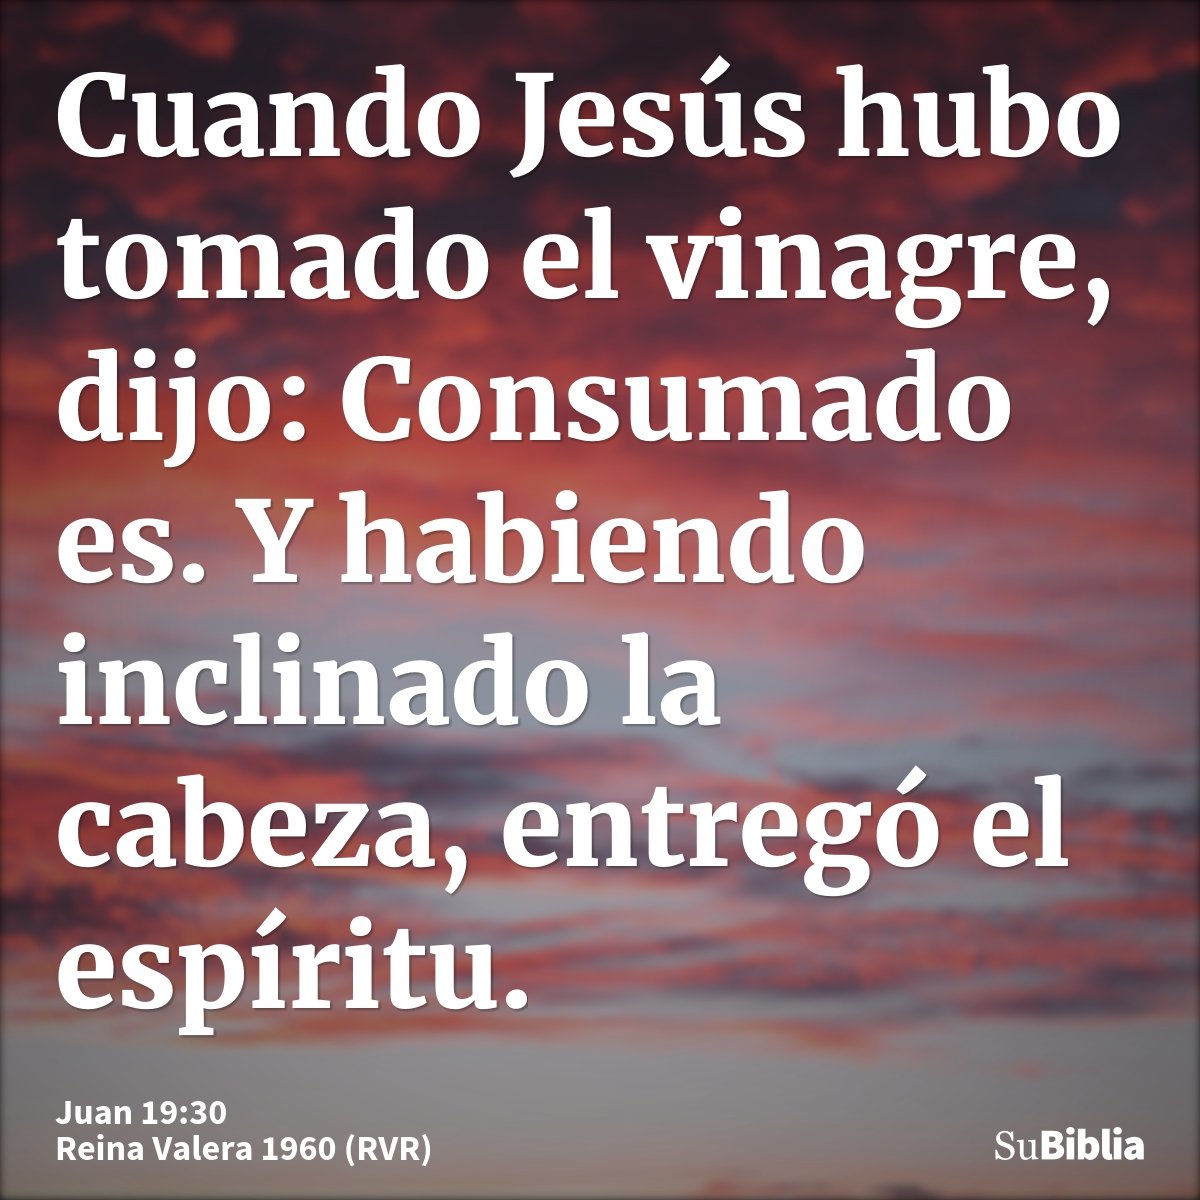 Cuando Jesús hubo tomado el vinagre, dijo: Consumado es. Y habiendo inclinado la cabeza, entregó el espíritu.